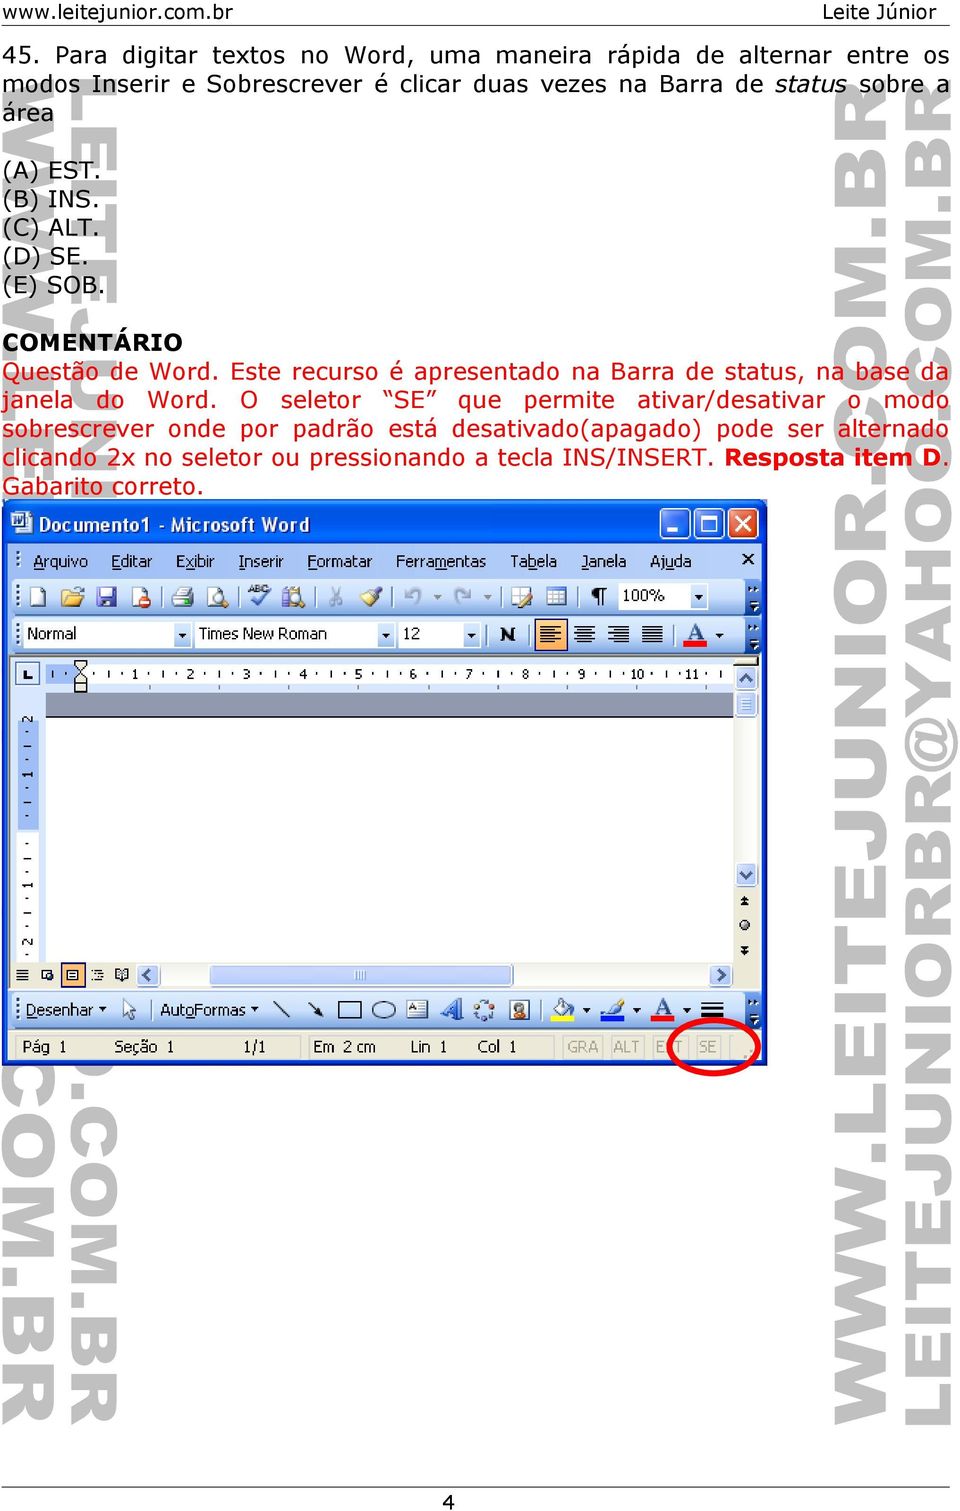 Este recurso é apresentado na Barra de status, na base da janela do Word.